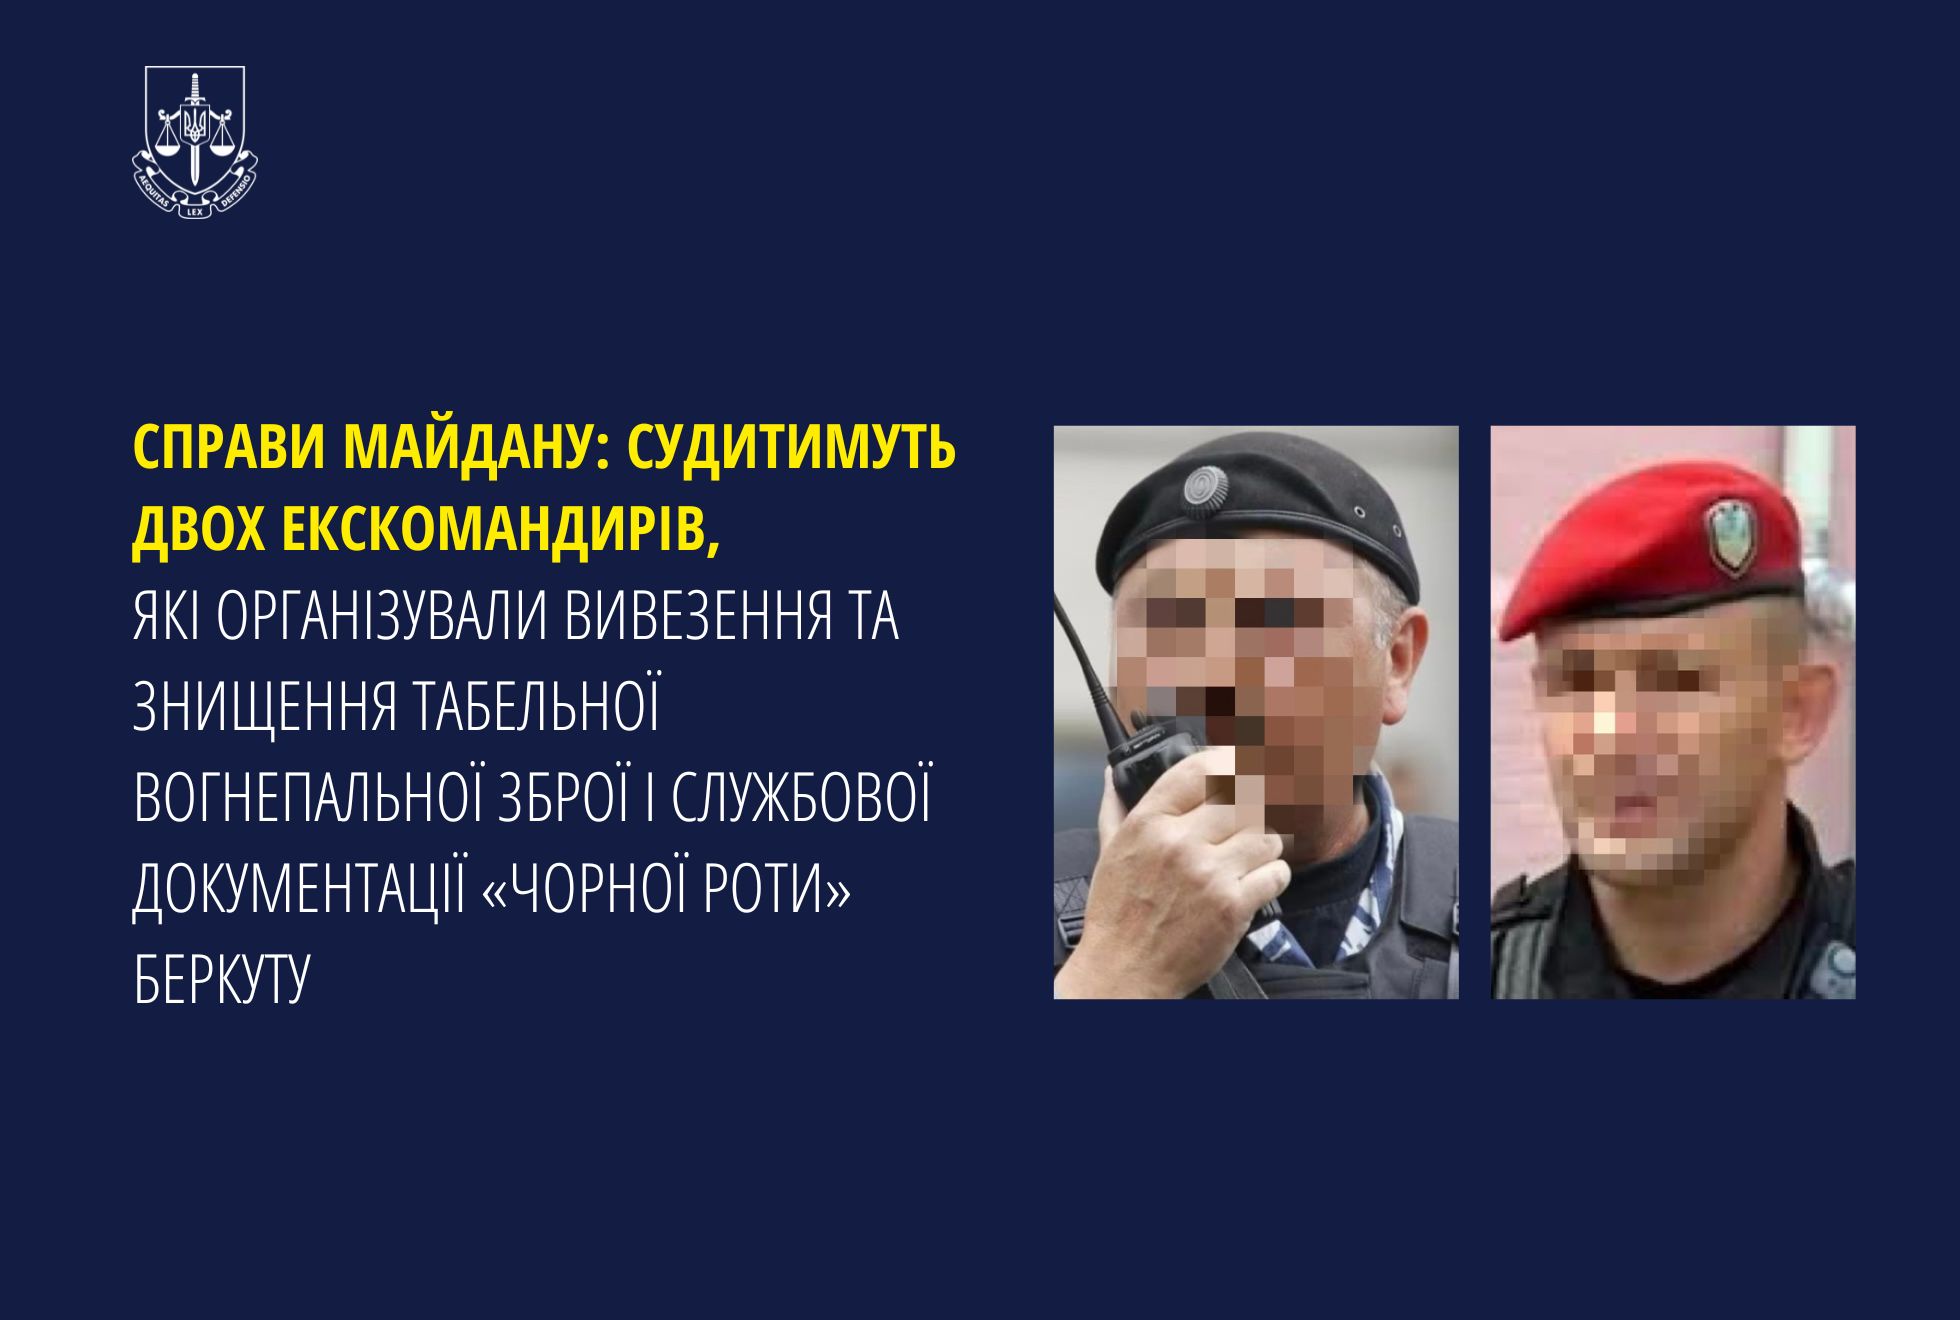 Справи Майдану: Судитимуть двох екскомандирів, які організували вивезення та знищення табельної вогнепальної зброї і службової документації «чорної роти» Беркуту